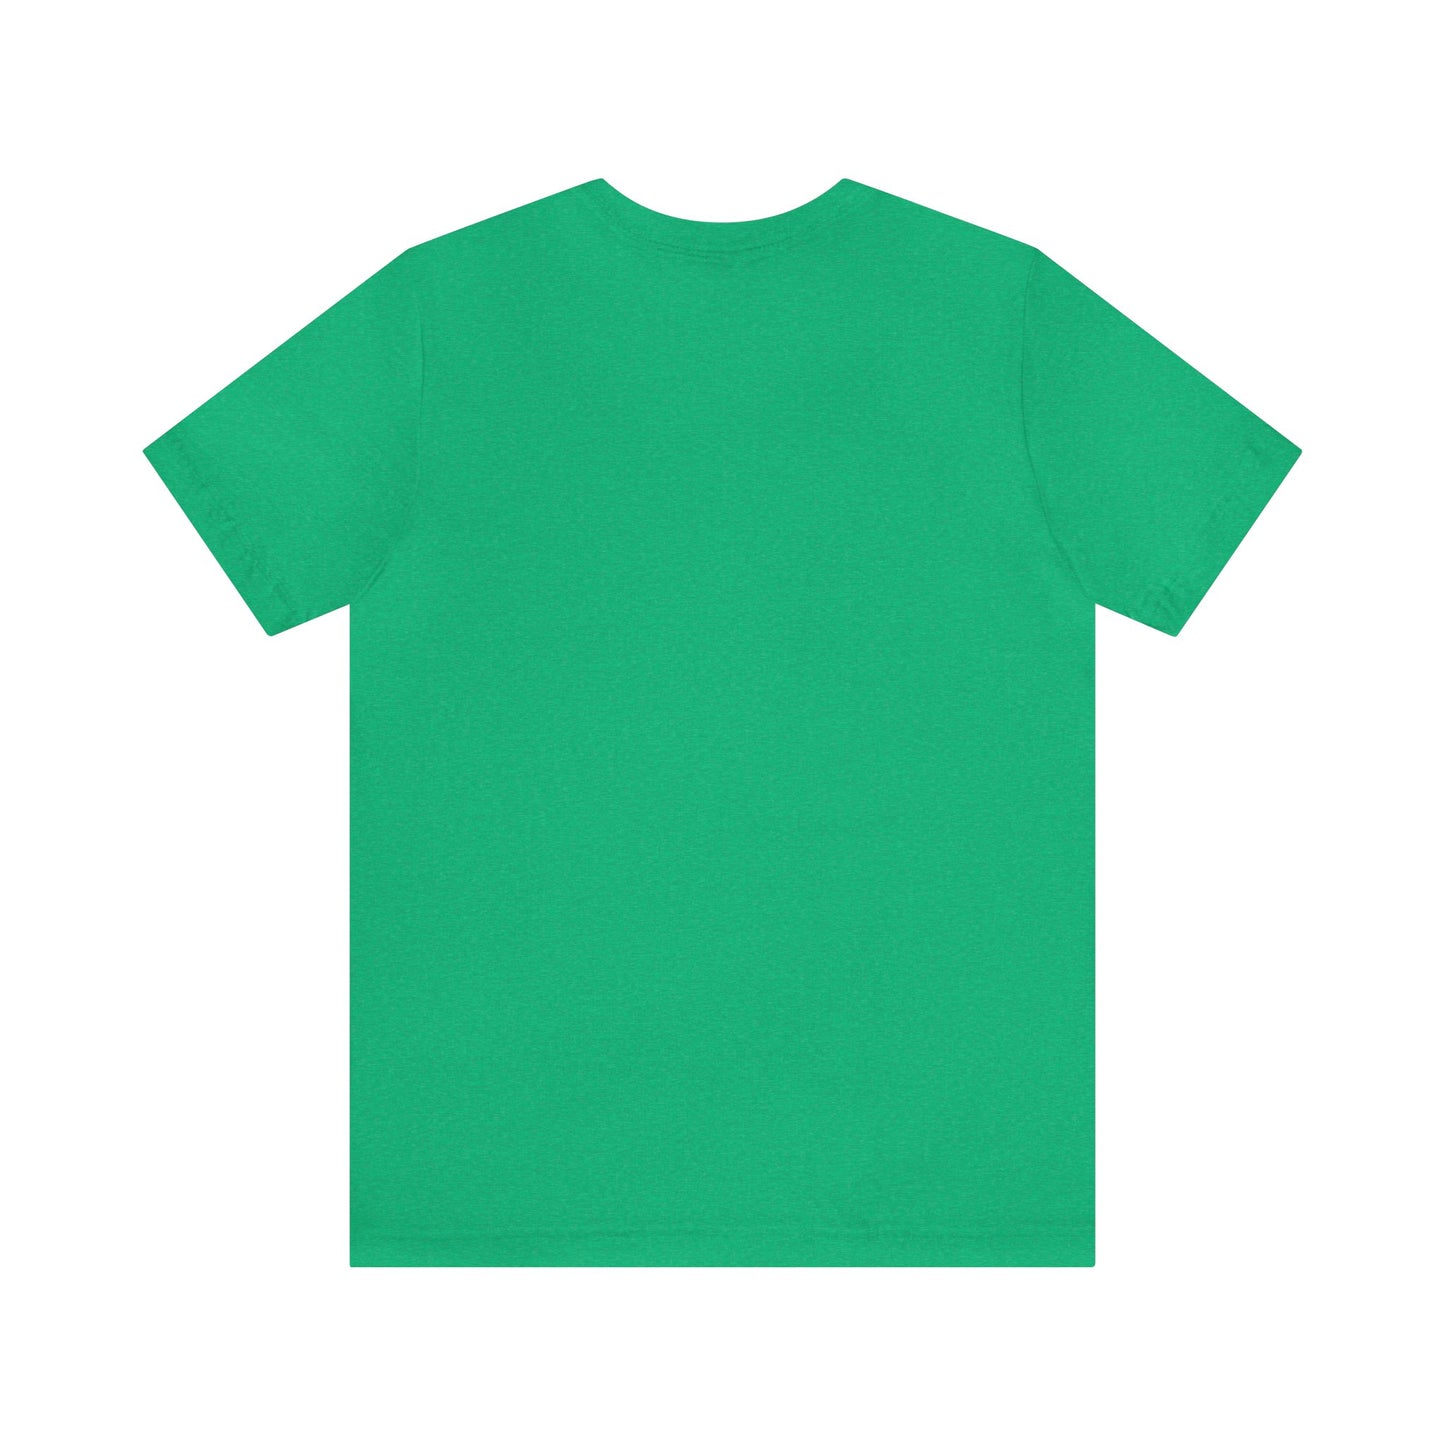 St Patrick's Day Party Shirt St Paddy Shirt Irish Shirt